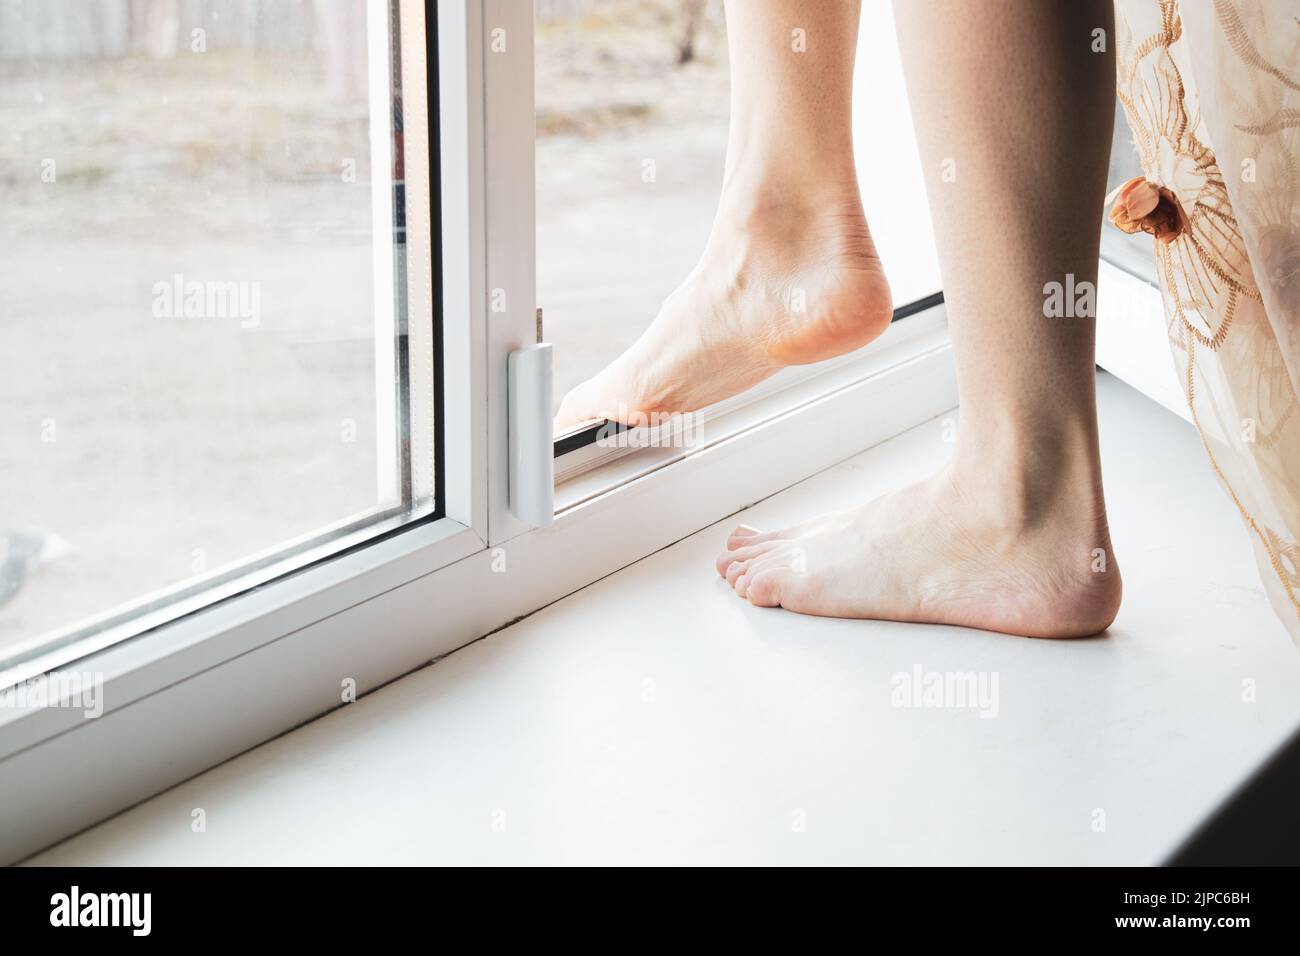 Ein junges Mädchen steht auf dem Fenster ihrer Wohnung, beging Selbstmord, sprang durch die Fenster, Depression und Selbstmord von Menschen, Füße im Wind Stockfoto